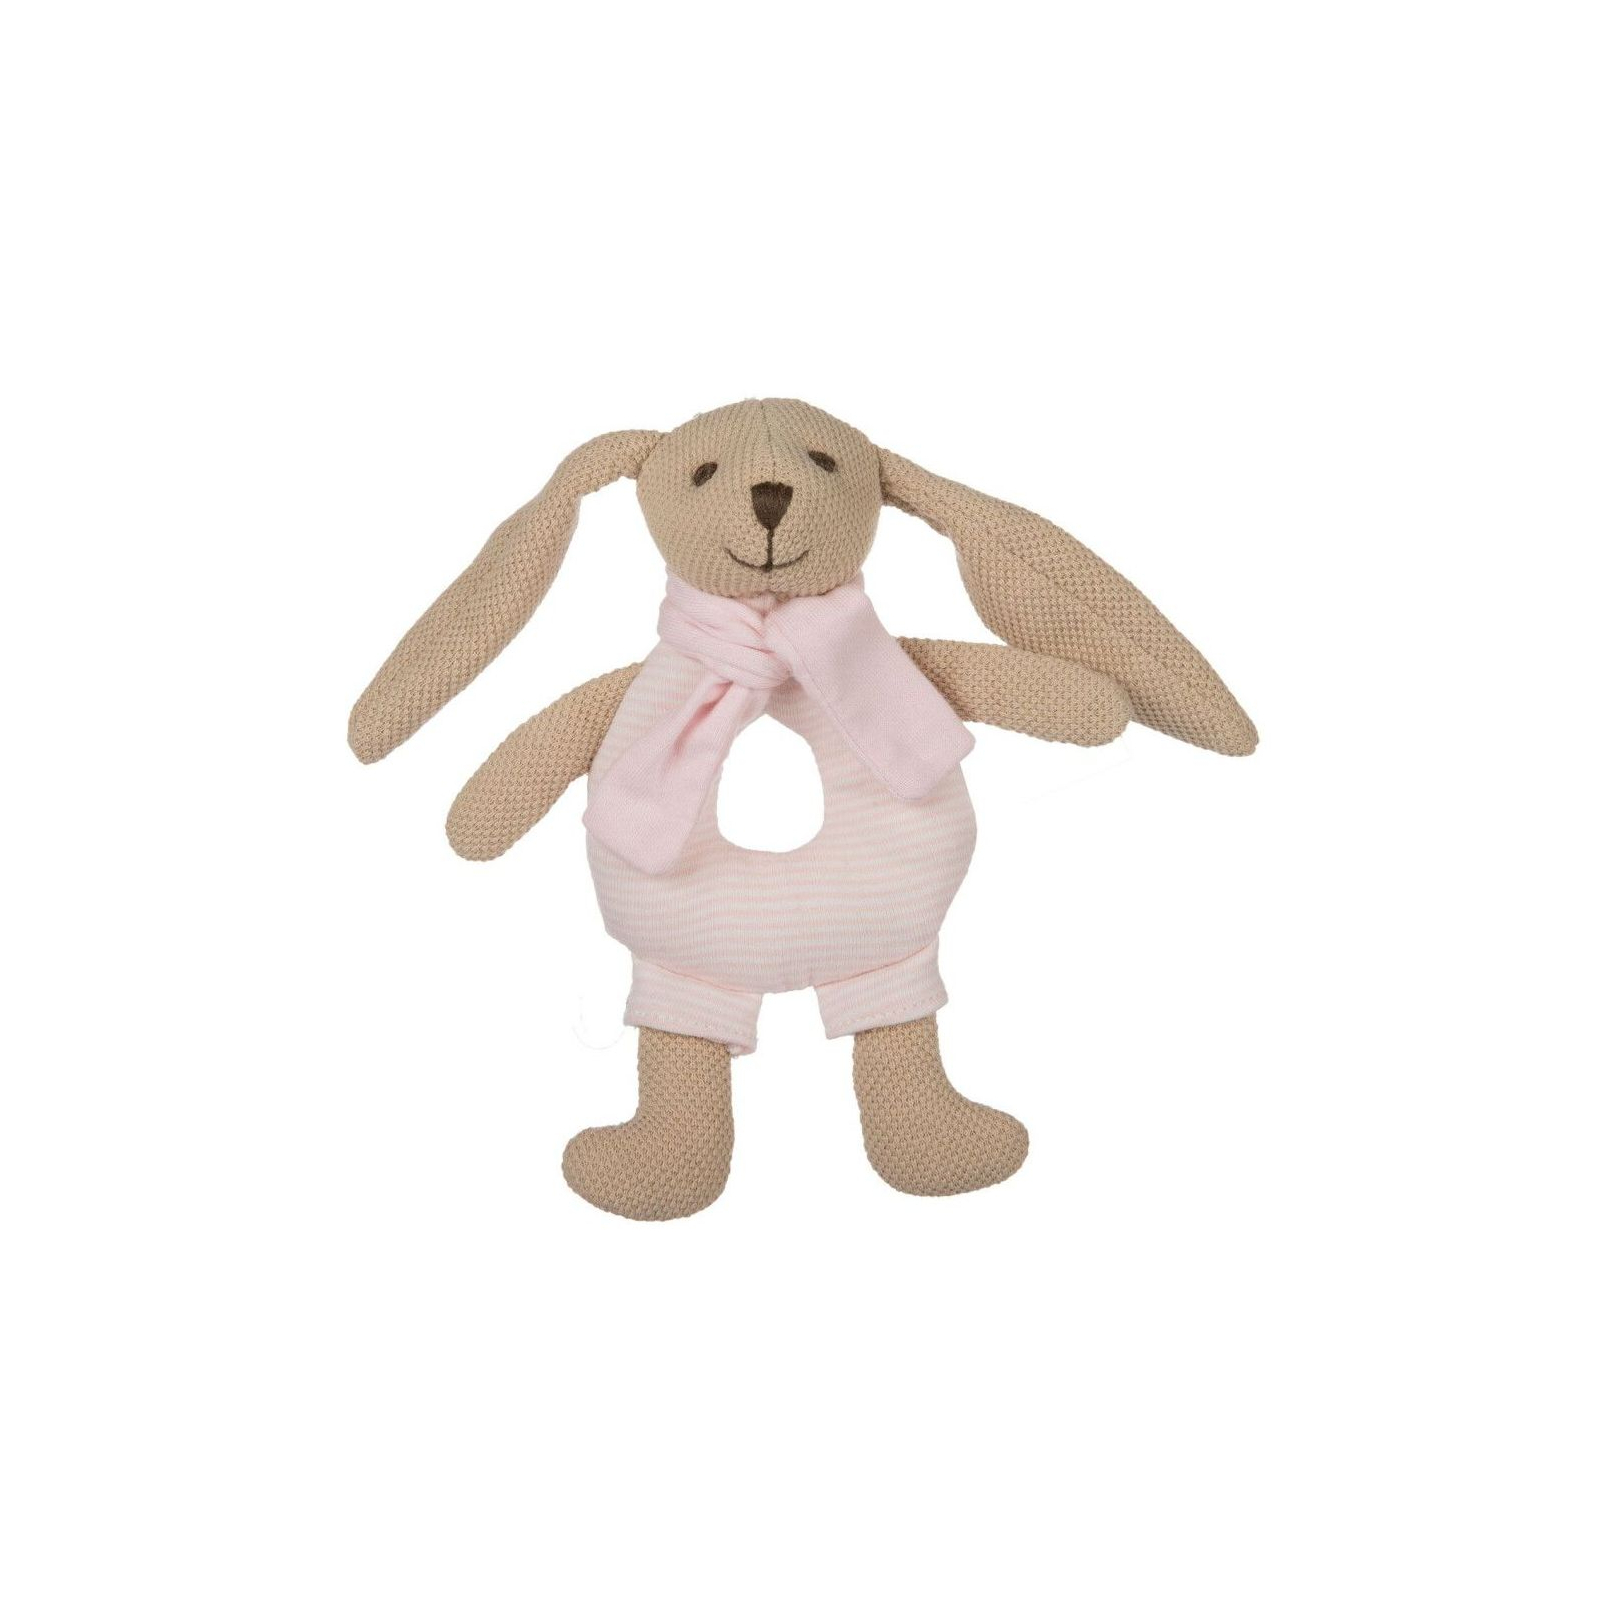 Погремушка Canpol мягкая Кролик розовый (80/201_pin)